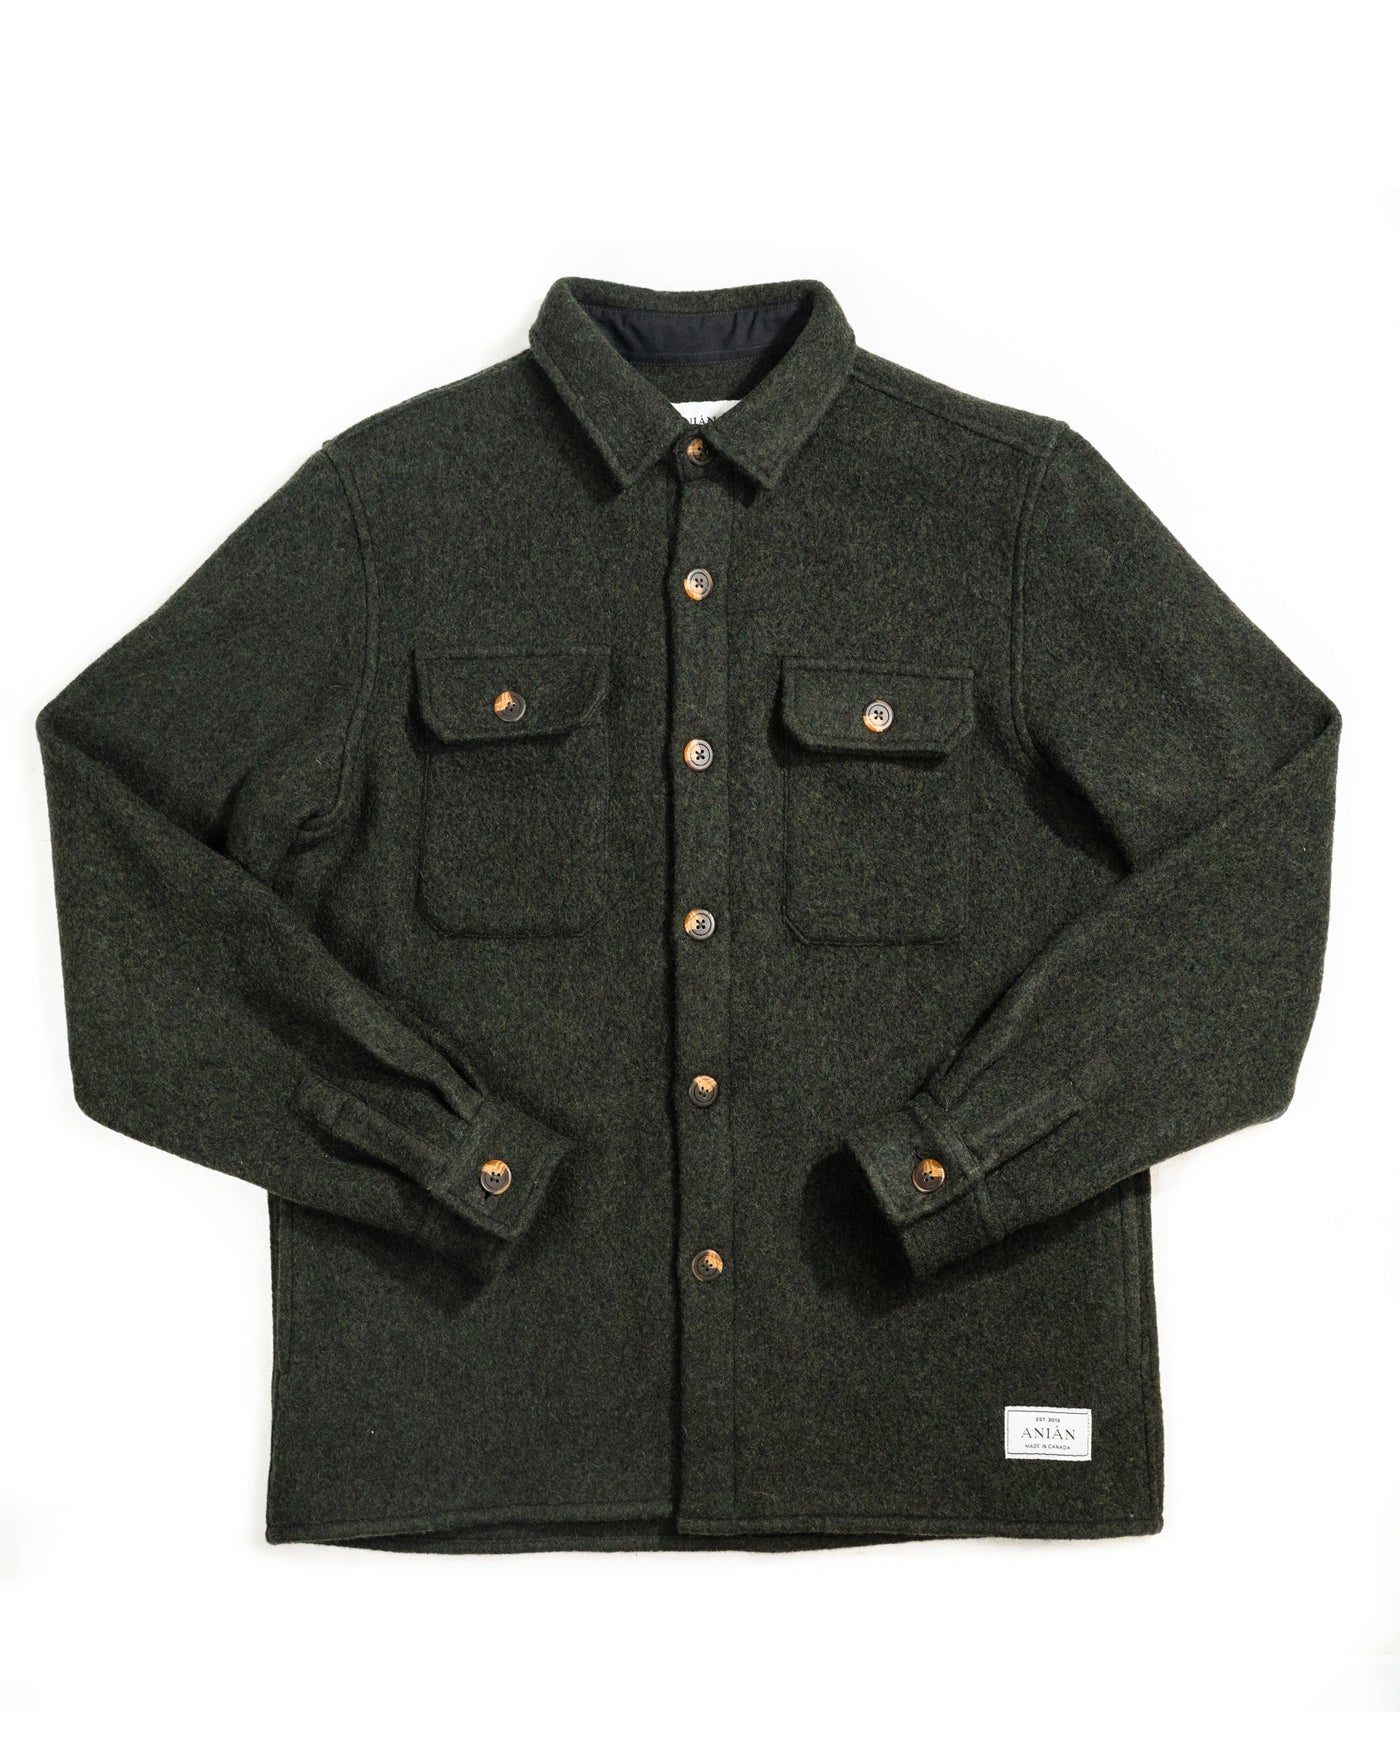 ANIÁN | Wool Field Coat